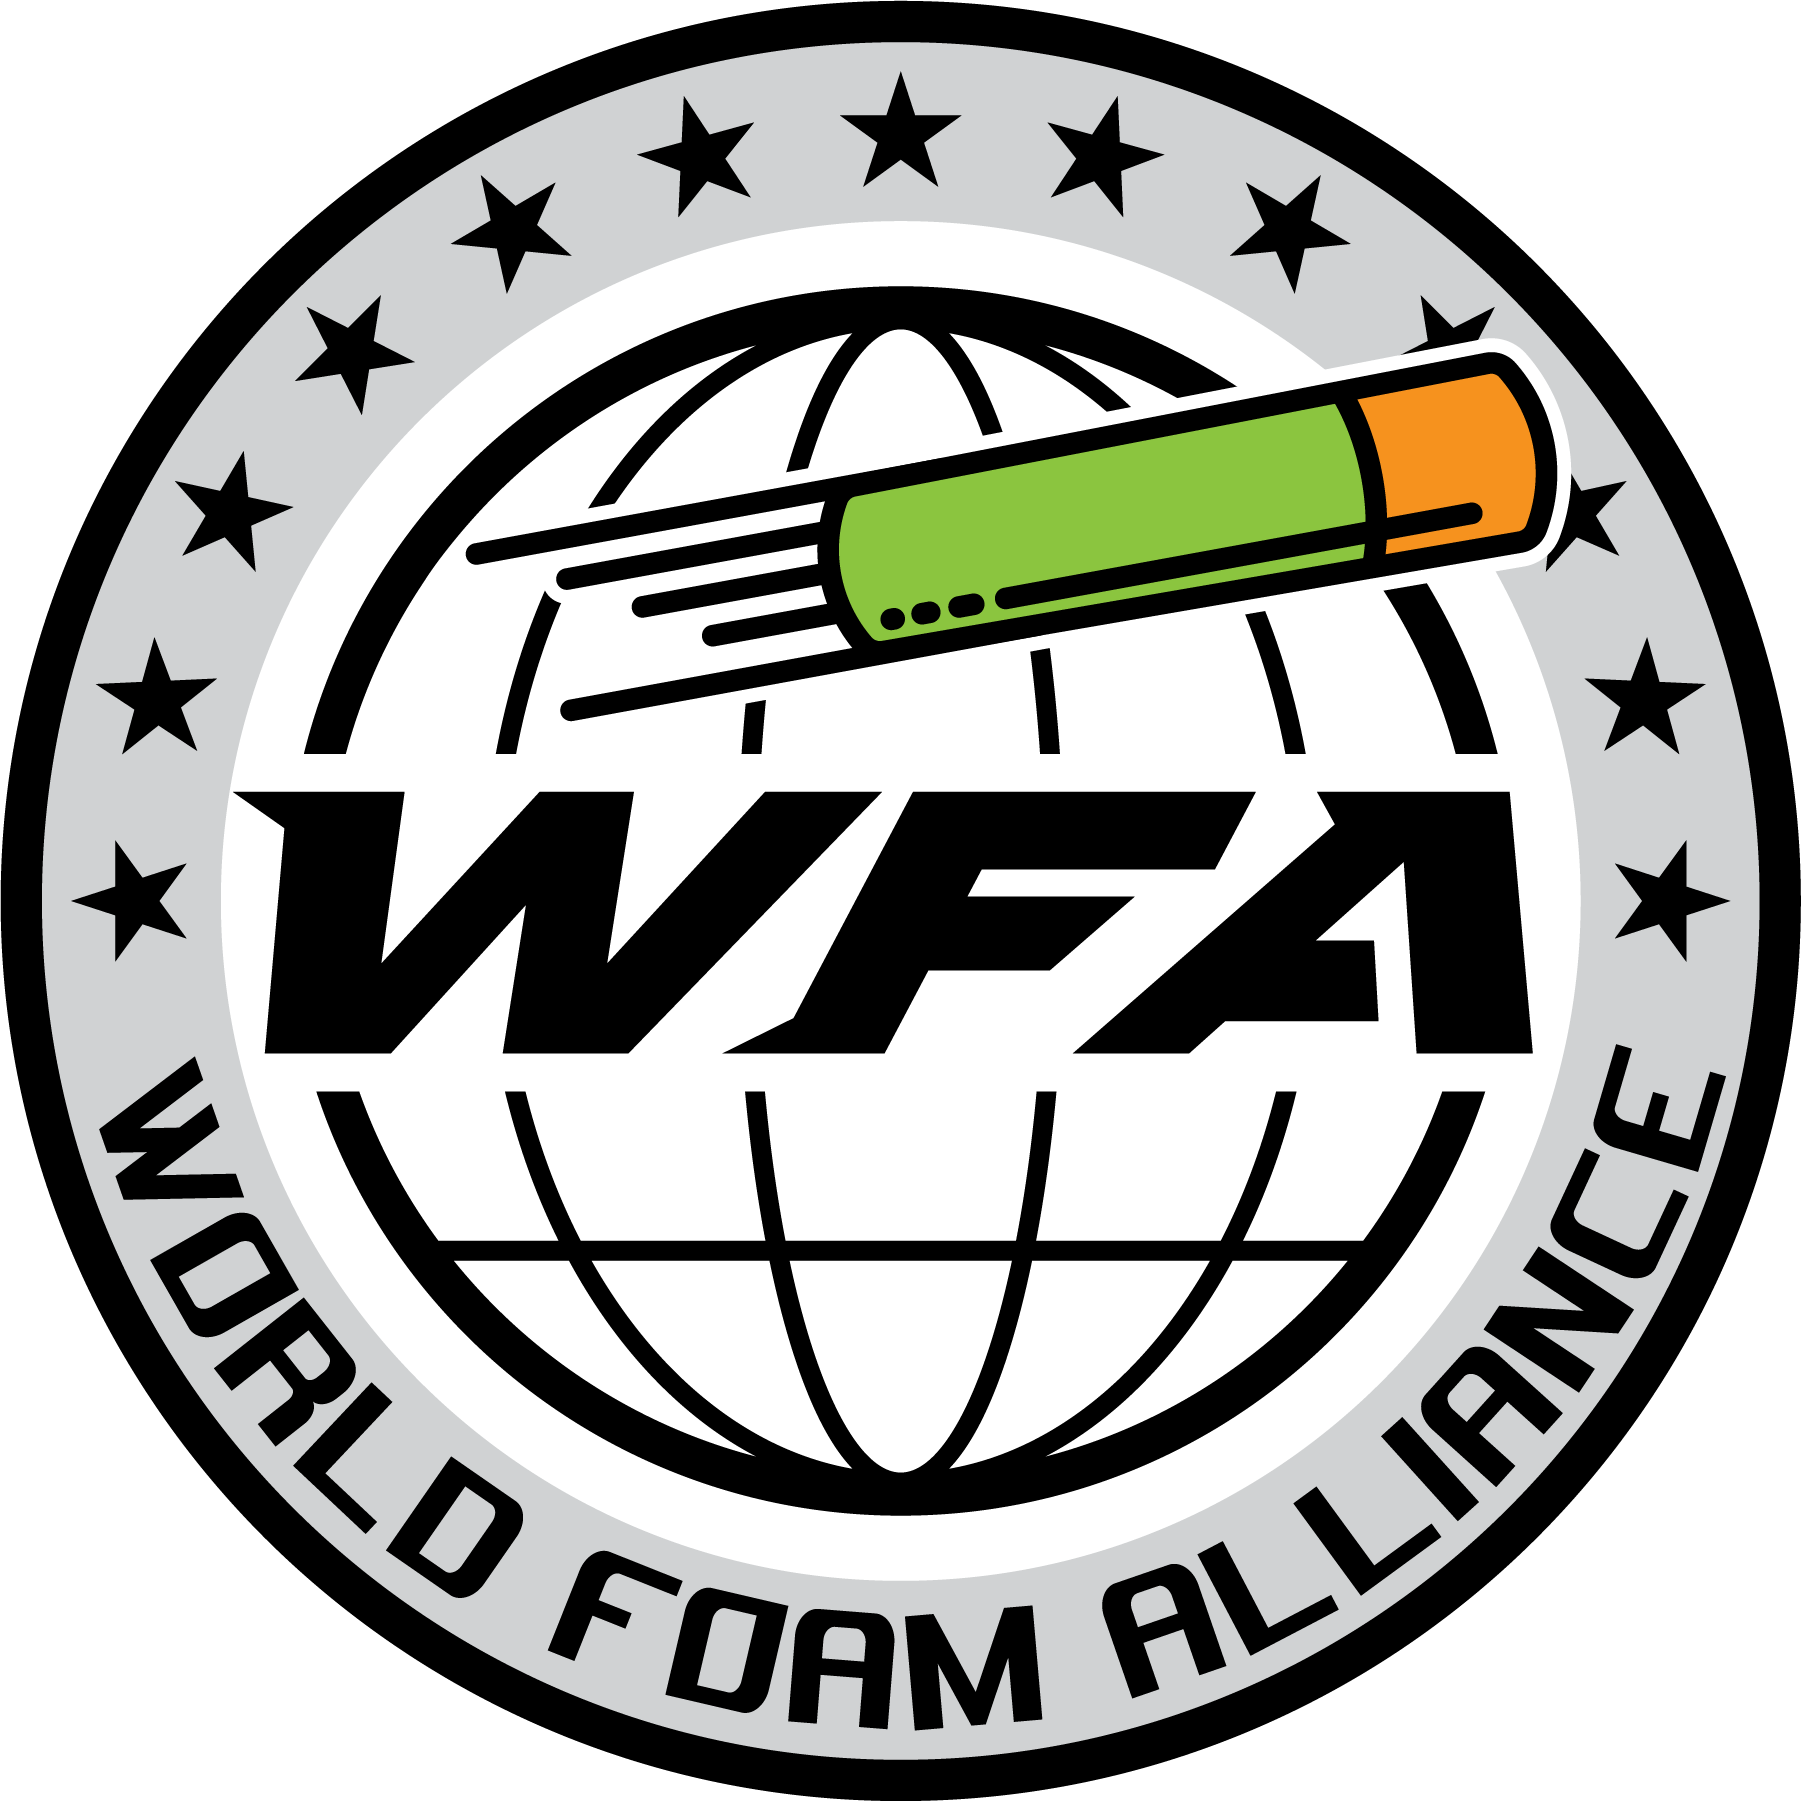 World Foam Alliance